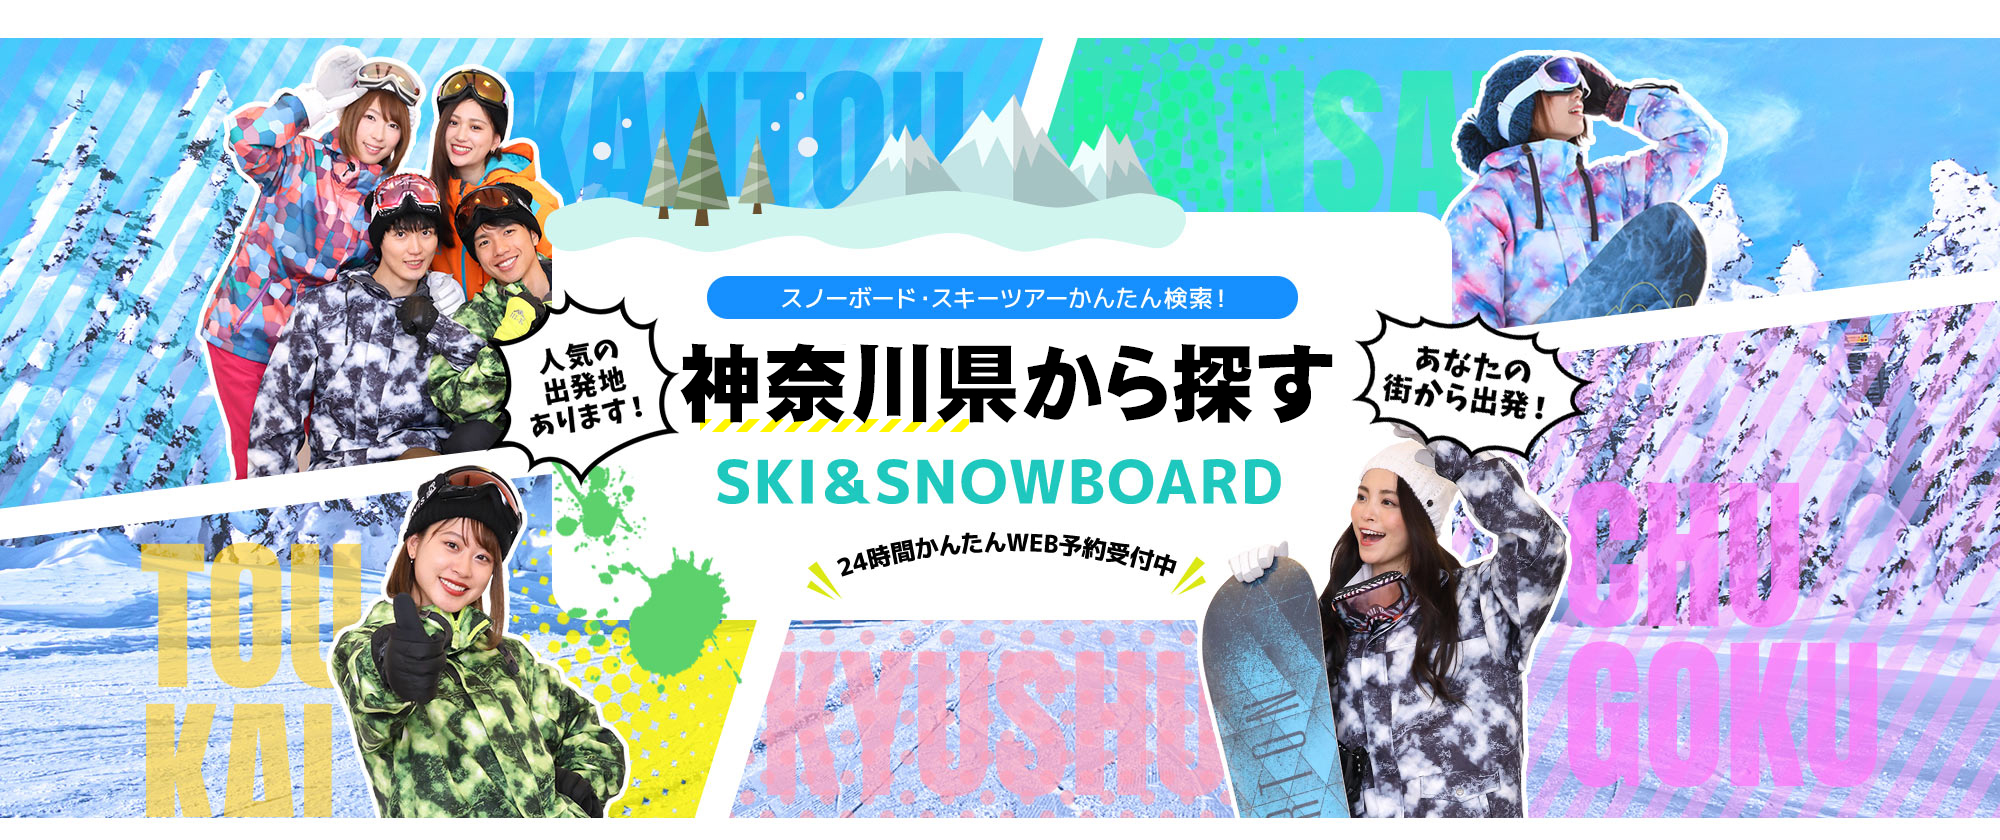 スノーボード・スキーツアーかんたん検索！ 神奈川県から探す SKI&SNOWBOARD